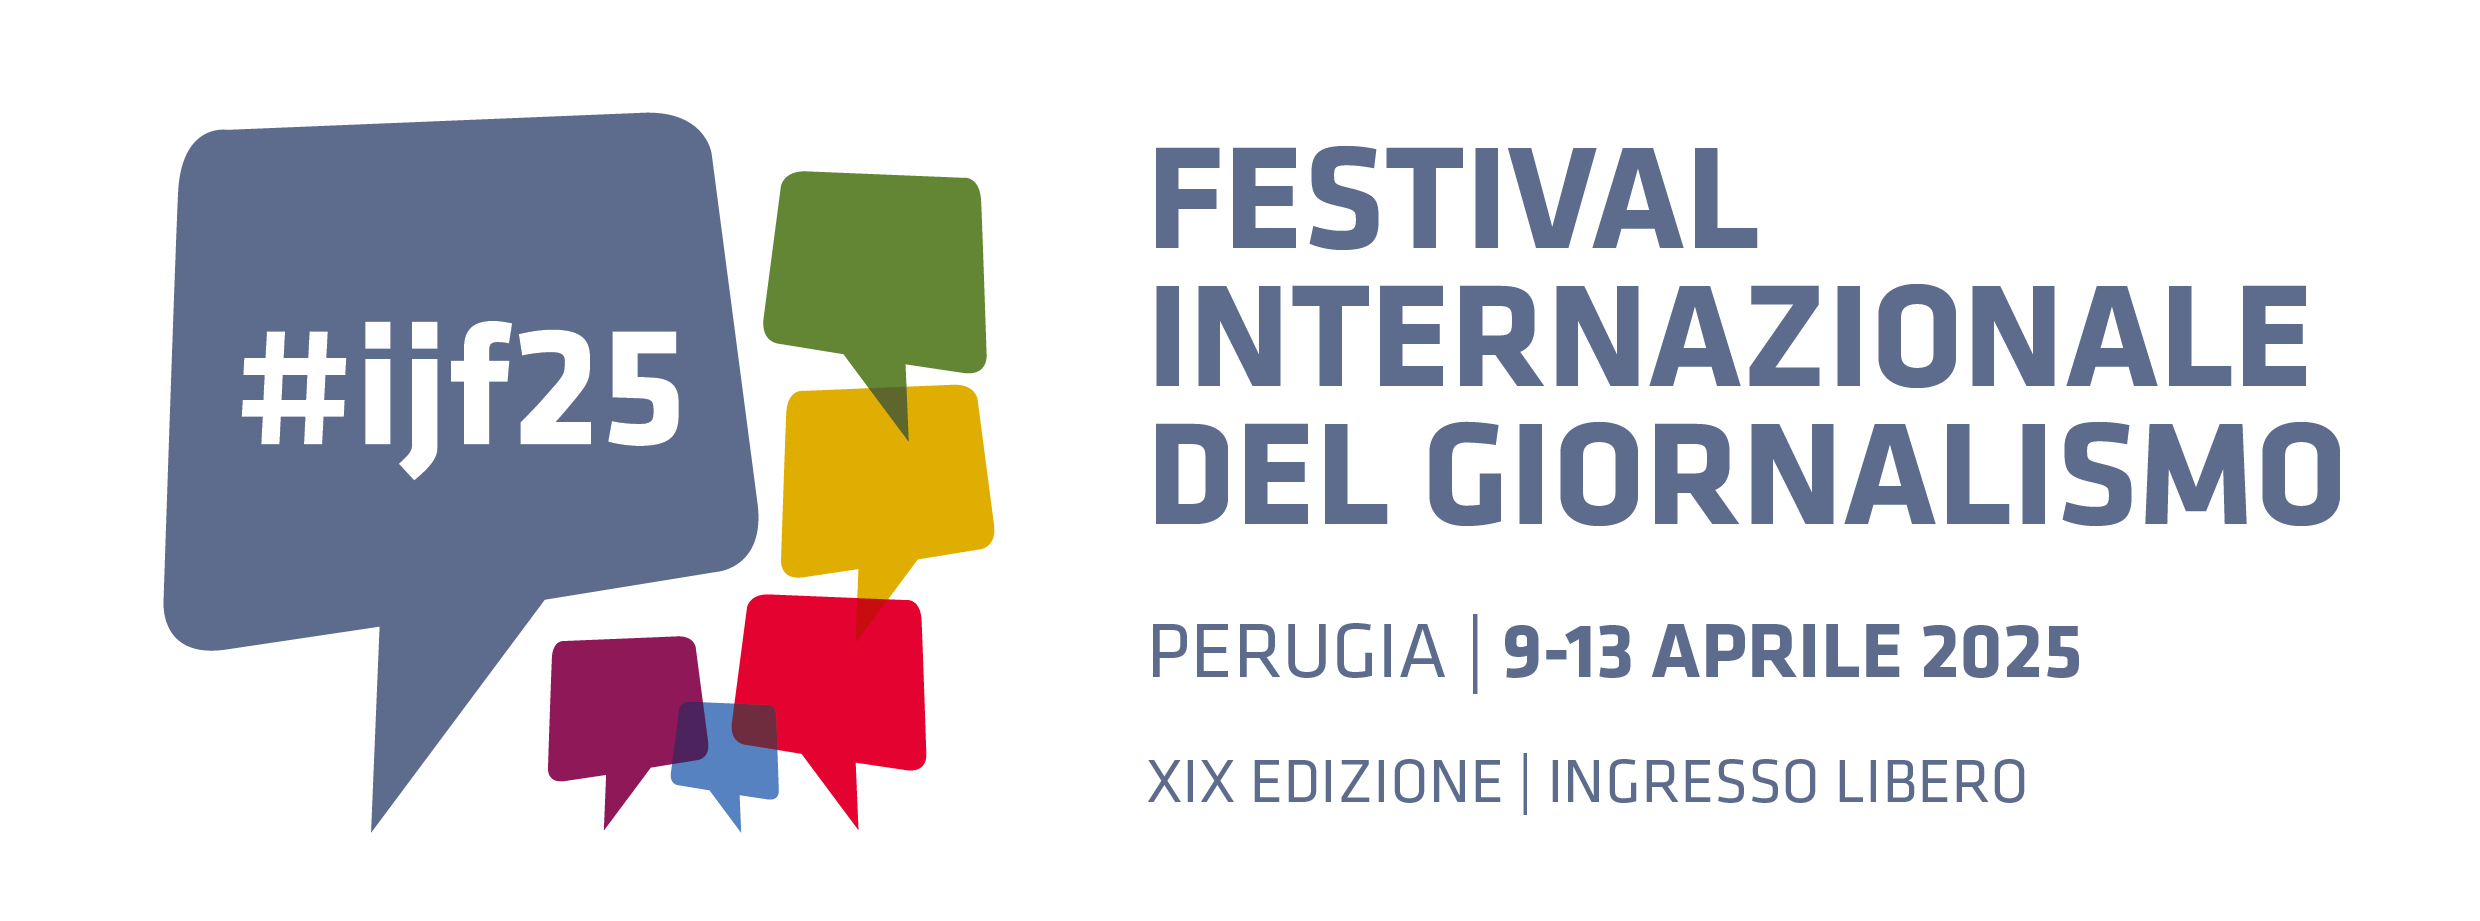 Festival Internazionale del Giornalismo